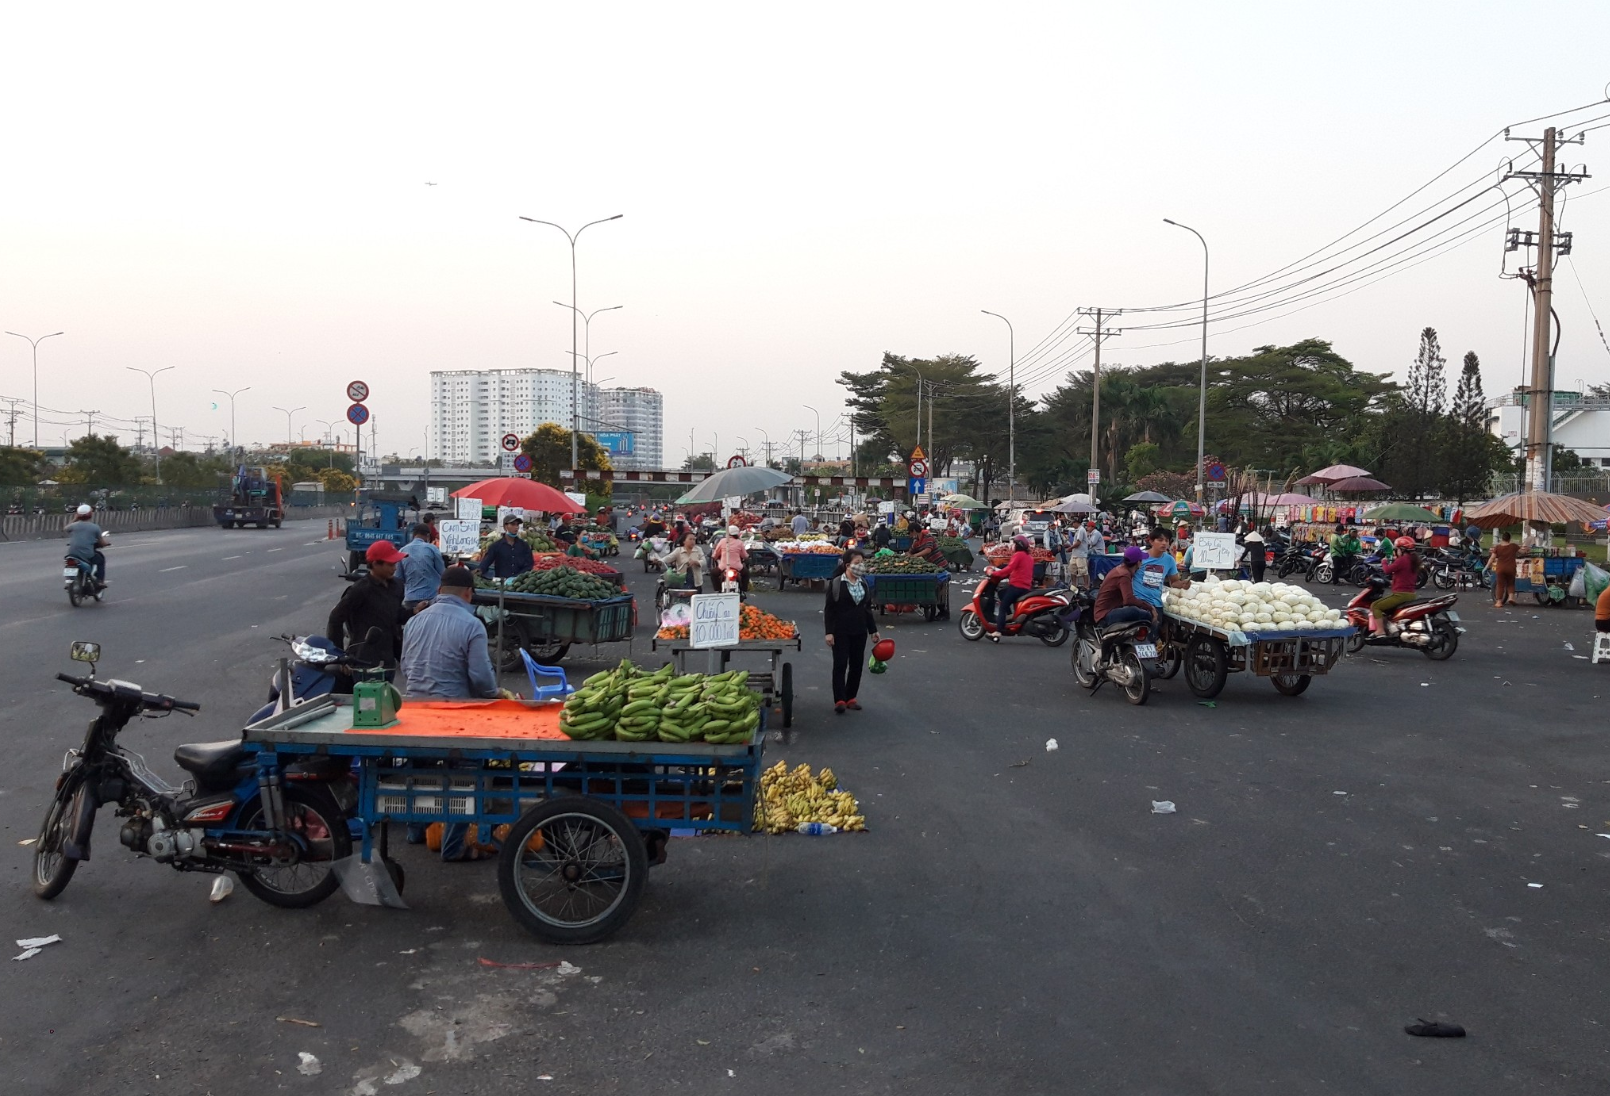 Tiếp tục di chuyển khoảng 2km, tình trạng buôn bán lấn chiếm lòng đường tại khu công nghiệp Tân Tạo (quận Bình Tân) diễn ra phức tạp hơn. Ảnh TK.